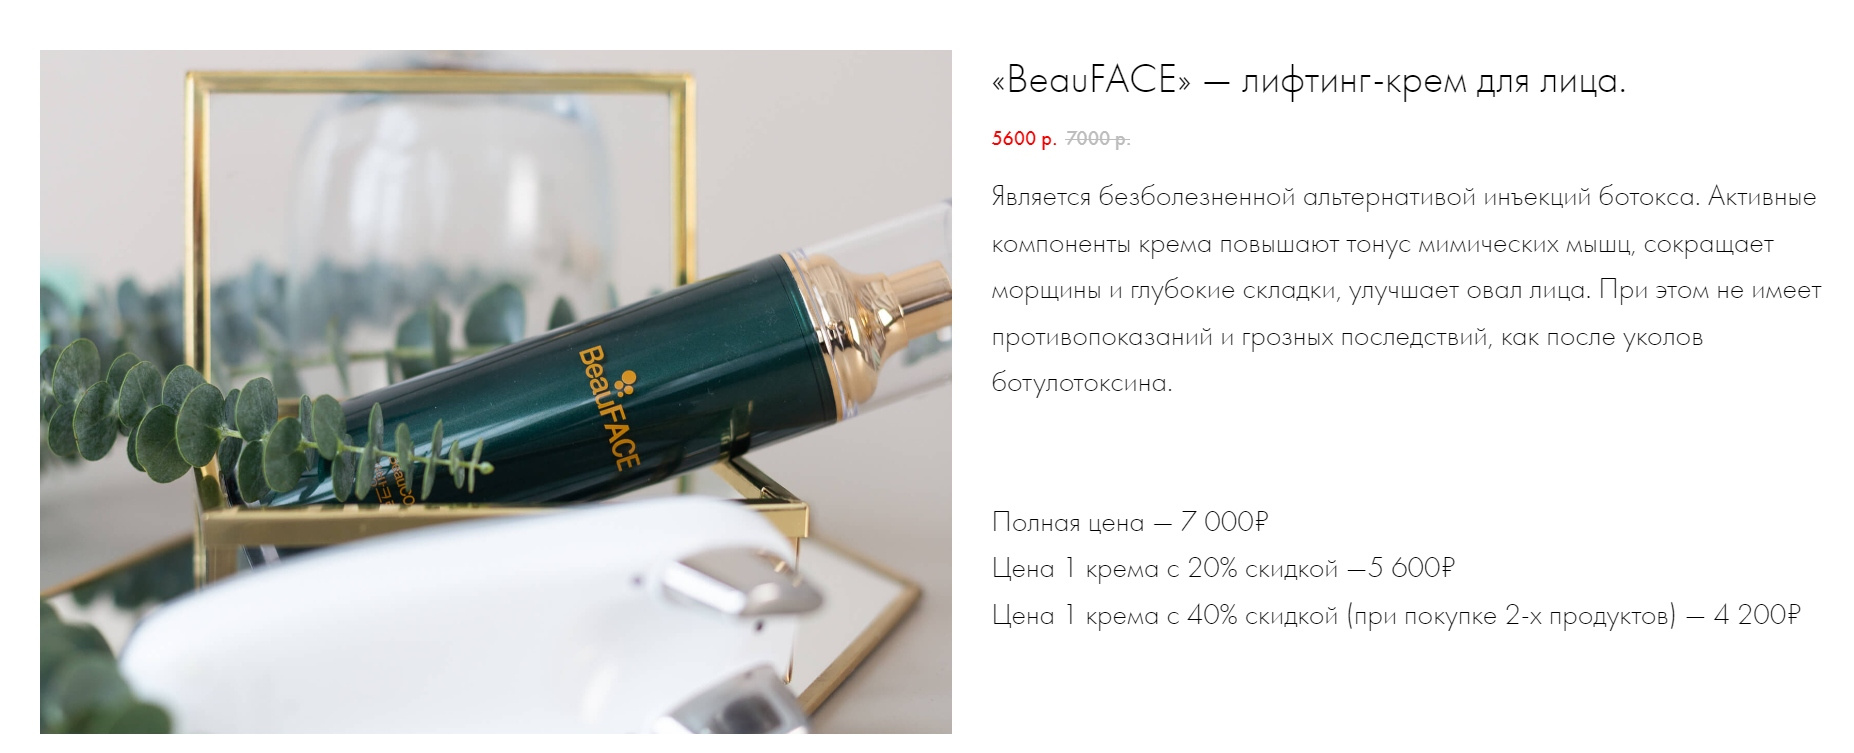 Крем BeauFace от корейской фирмы Arnebo Cosmetics действительно существует. Но стоит он не <nobr class="_">94 900</nobr> рублей, как в клинике, в гораздо дешевле